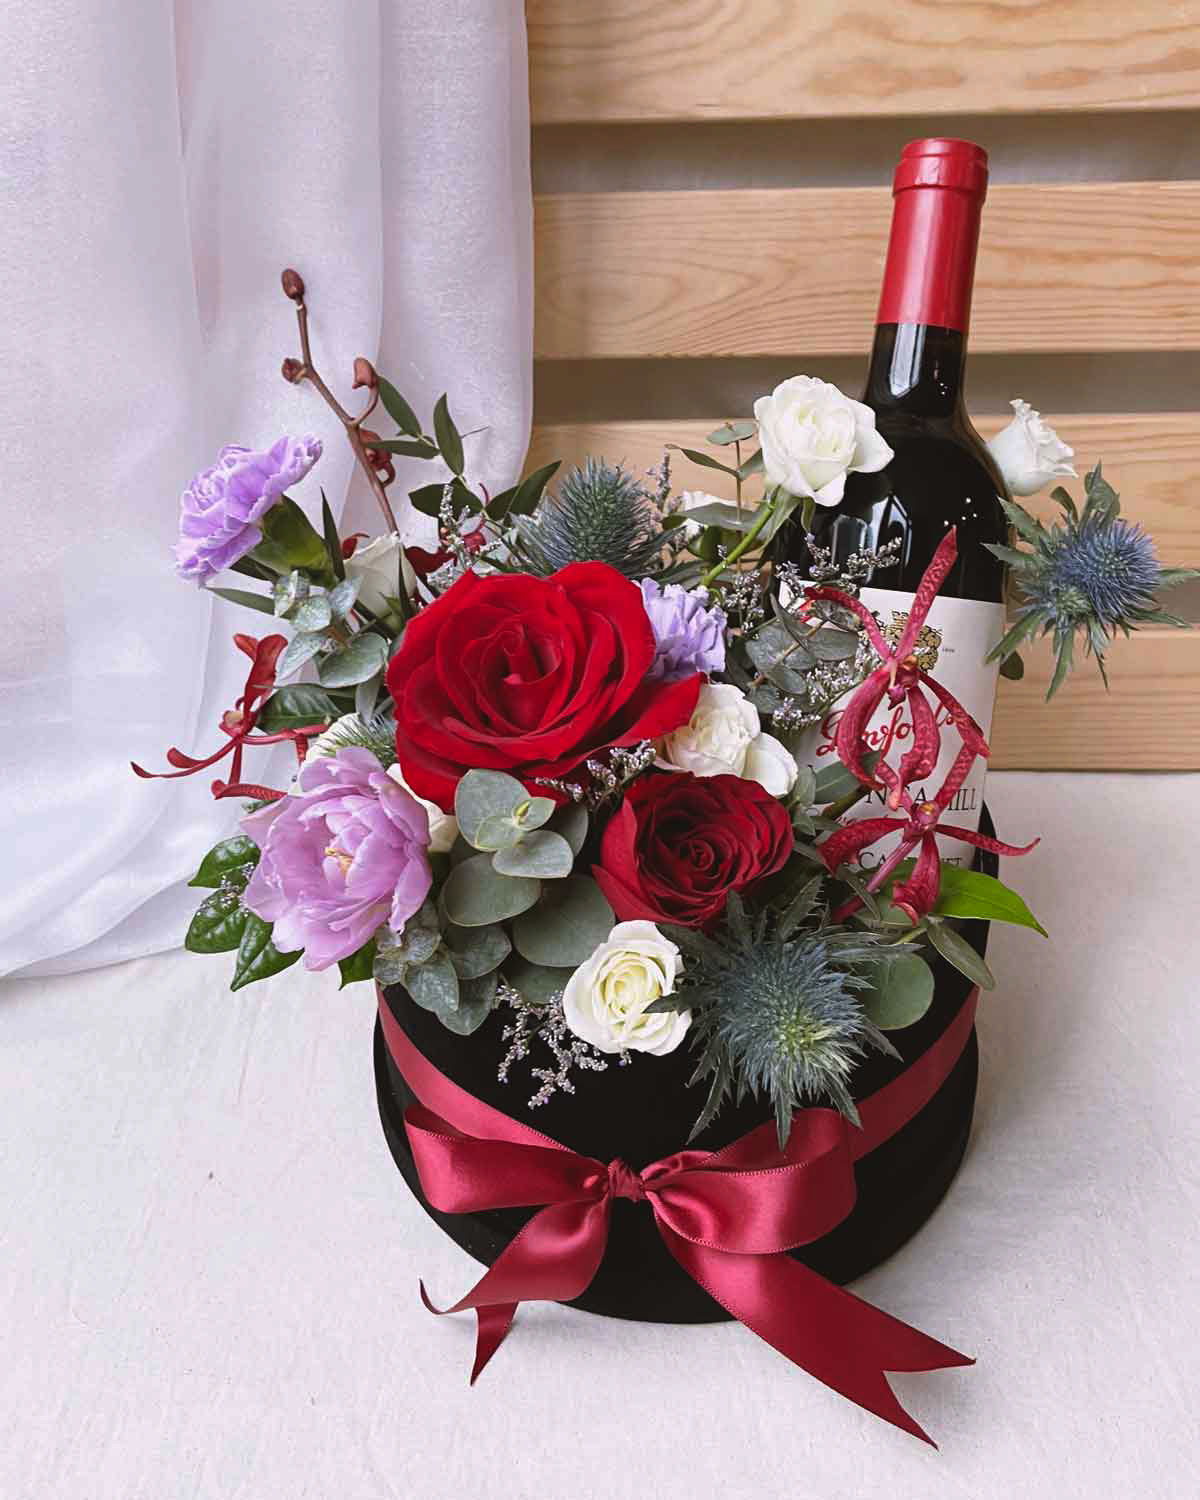 Hình ảnh rượu và hoa sinh nhật đẹp, ý nghĩa